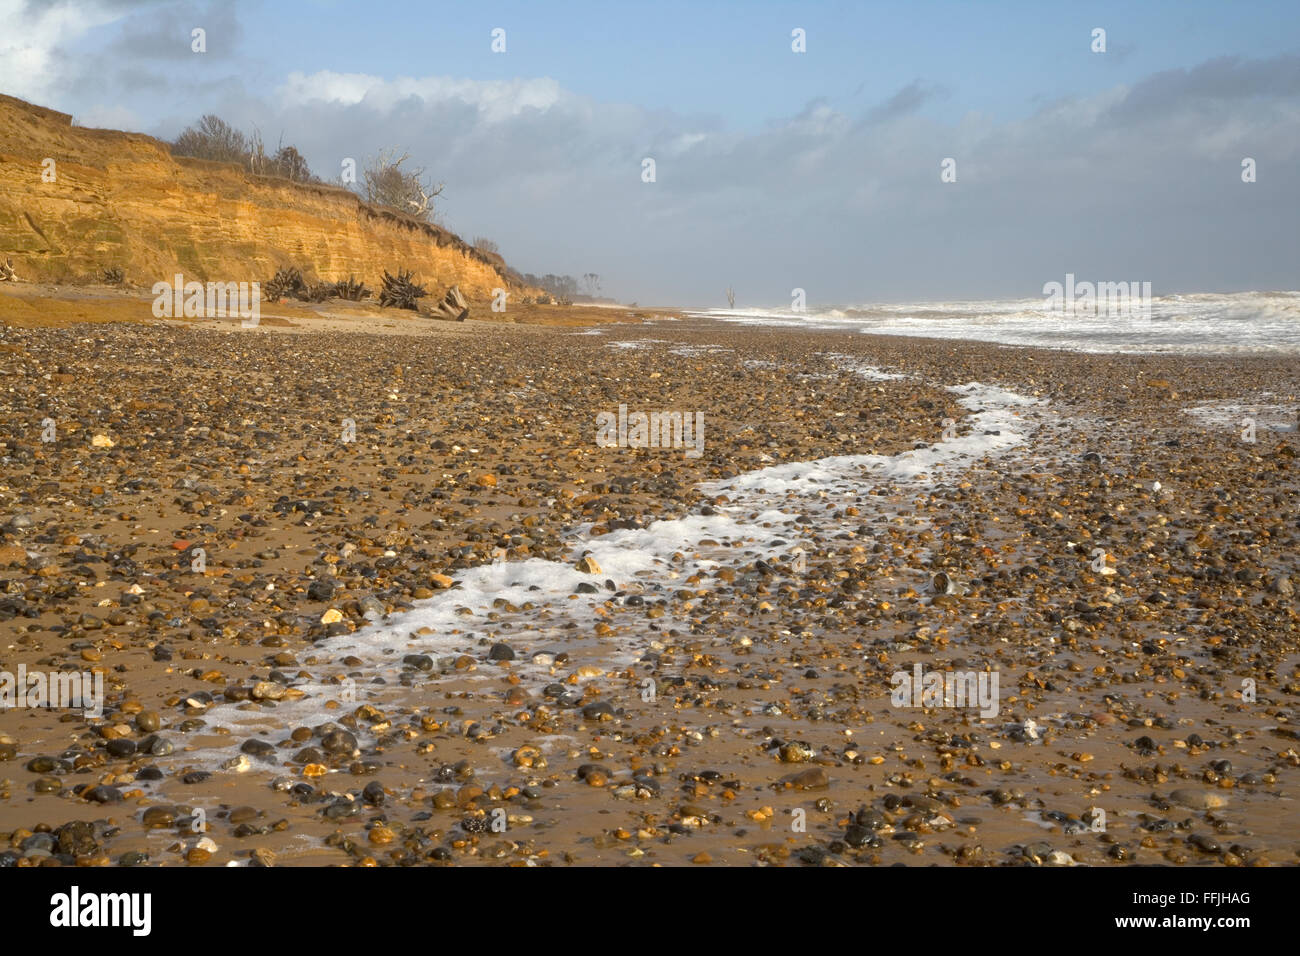 Plage de Covehithe composé de sable et de galets, avec souffle sur la plage causée par mer agitée, avec des falaises en ruine dans le backg Banque D'Images